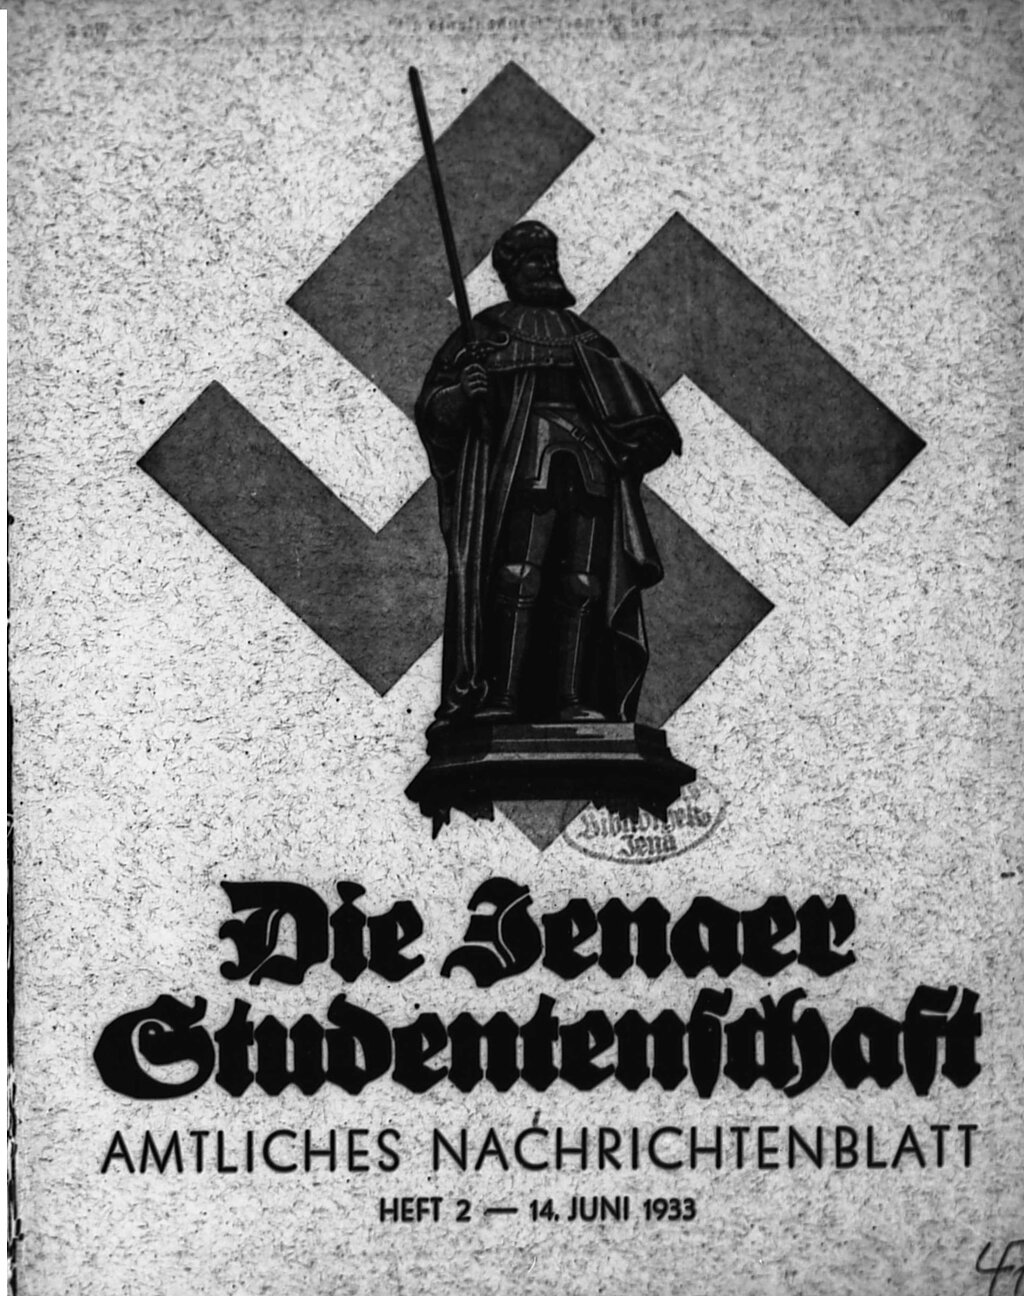 Zu sehen ist das Titelblatt des Amtlichen Nachrichtenblatts der Jenaer Studentenschaft, auf dem eine Statue vor einem riesigen Hakenkreuz prangt.